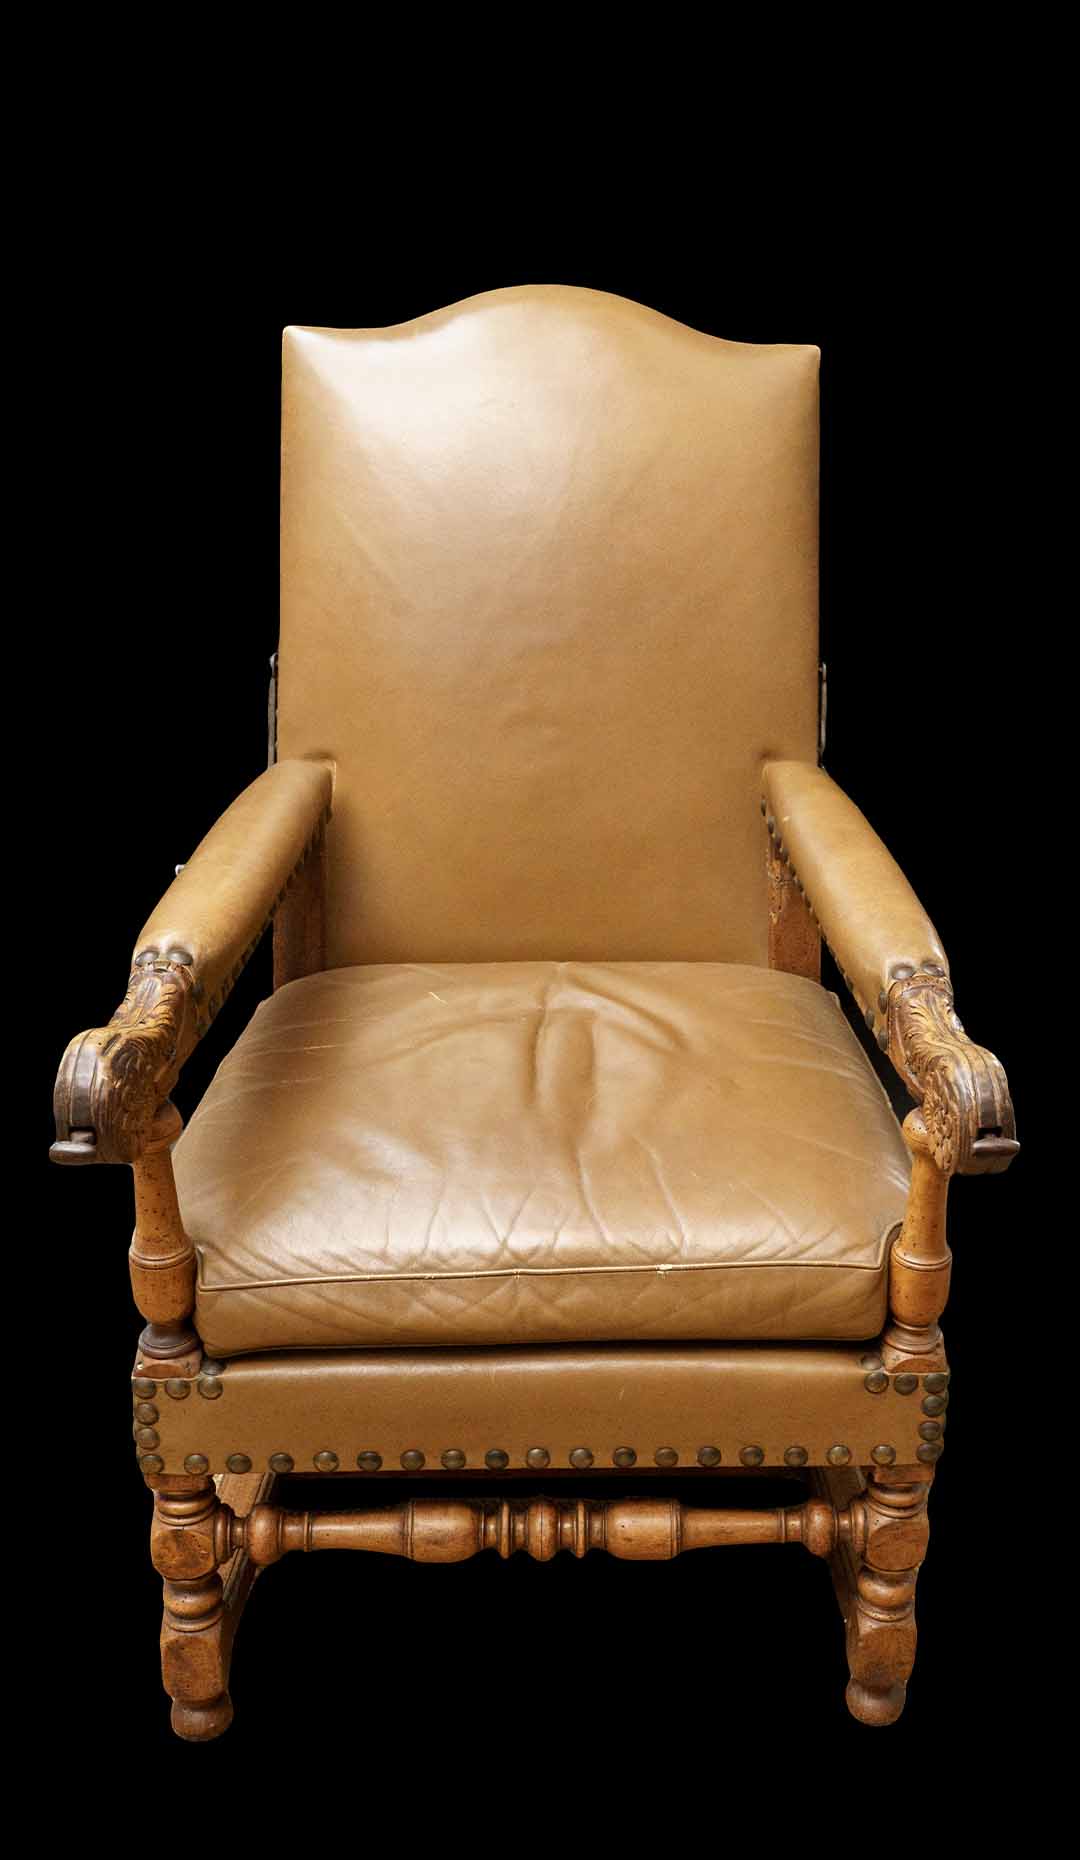 Rare Reclining Chair Louis XIV